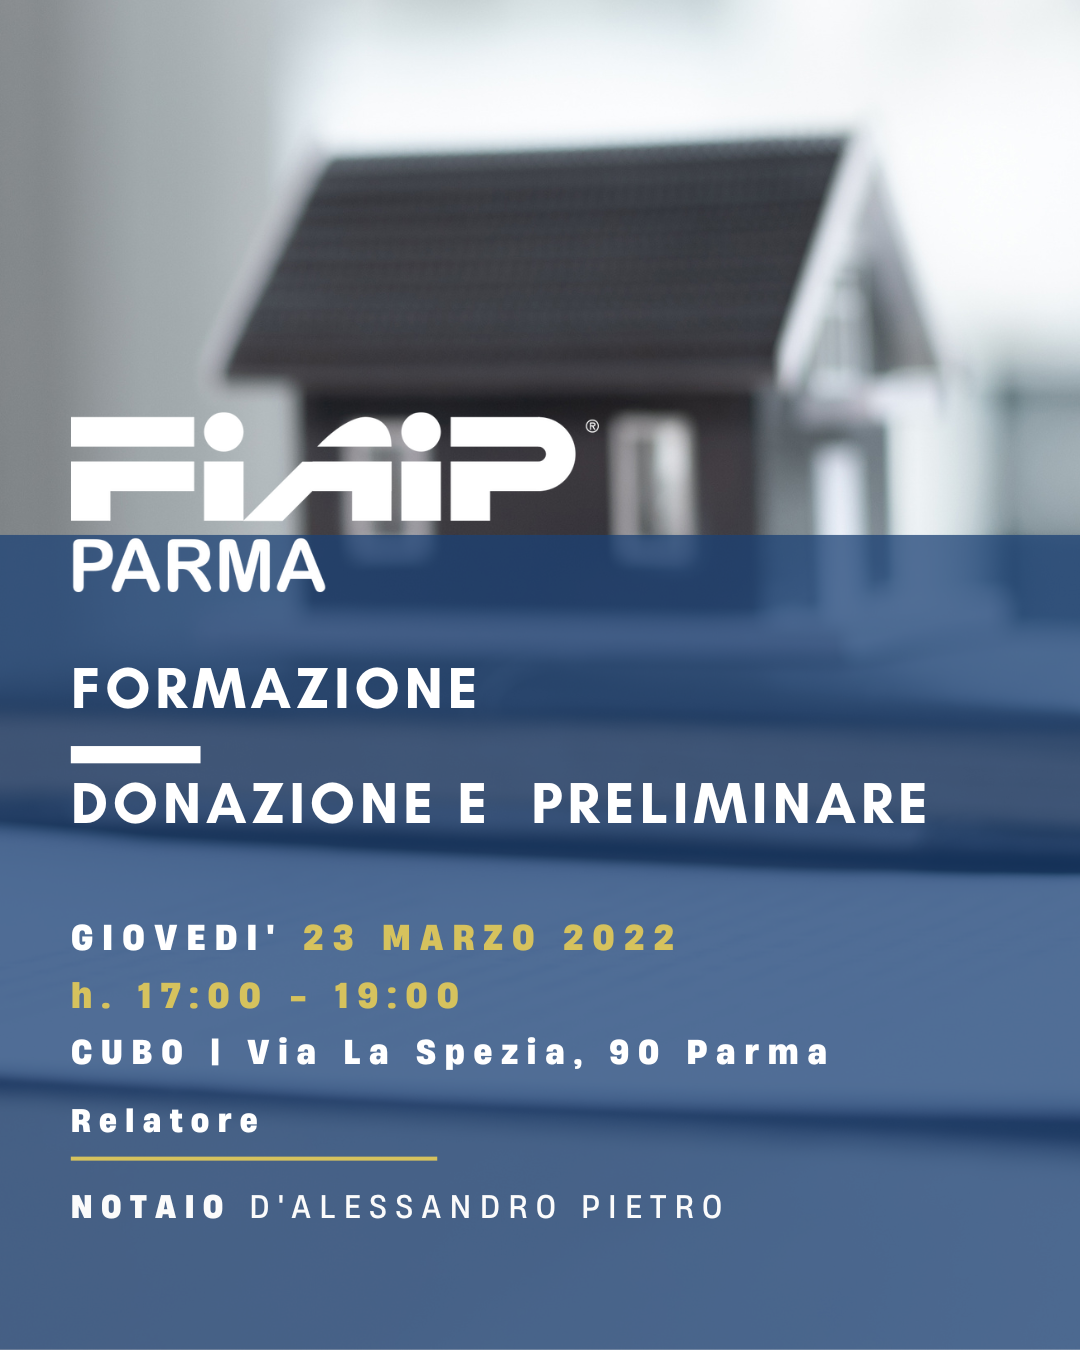 A Parma corso di approfondimento sulla donazione ed il contratto preliminare